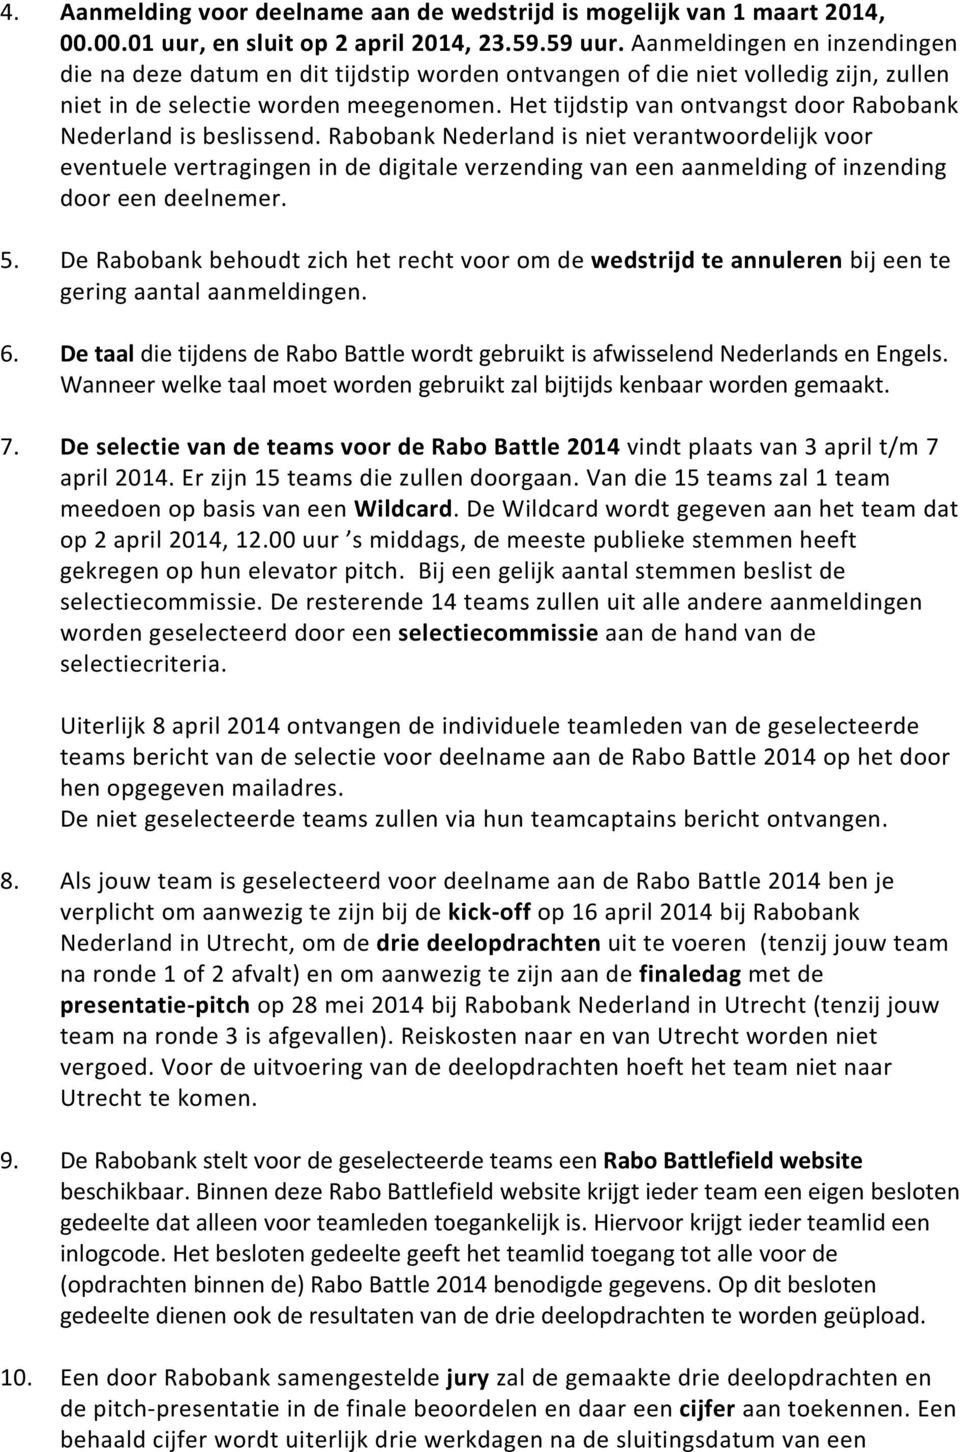 Het tijdstip van ontvangst door Rabobank Nederland is beslissend.